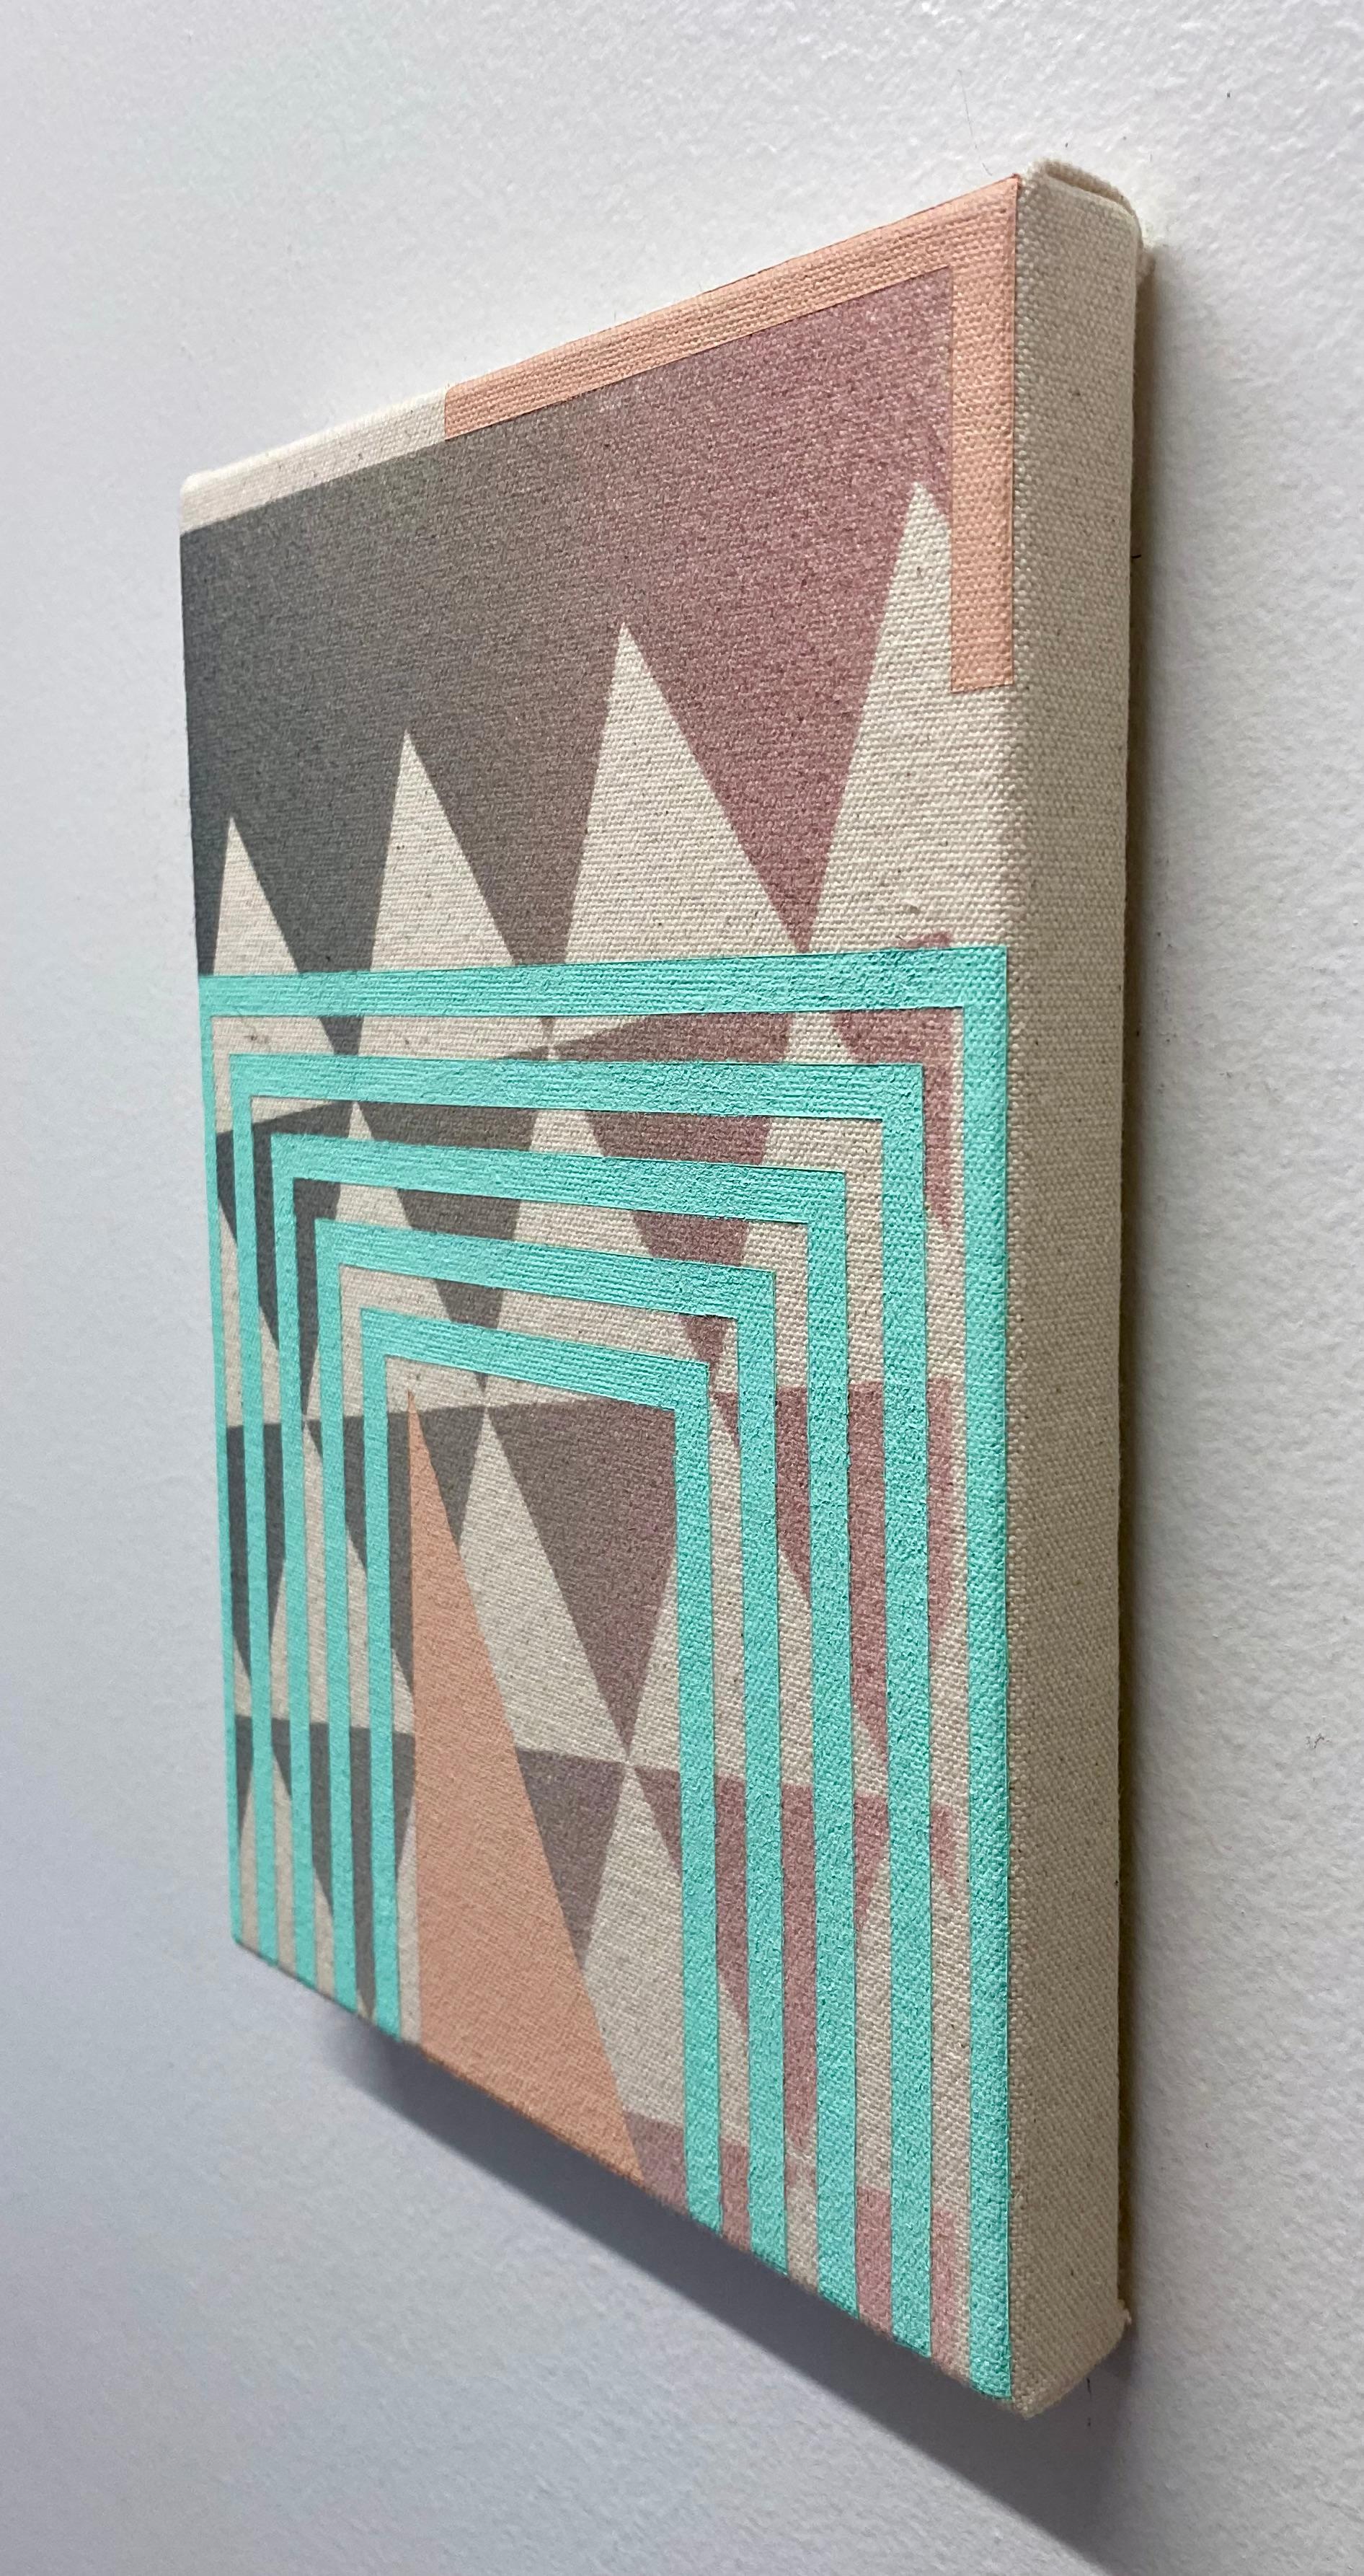 Cette peinture d'Alex McClurg représente une sous-couche de triangles équilatéraux gris foncé avec des lignes bleues vives et dures formant un U renversé multicouche au bas de la peinture. Un triangle de couleur saumon clair se trouve au centre du U